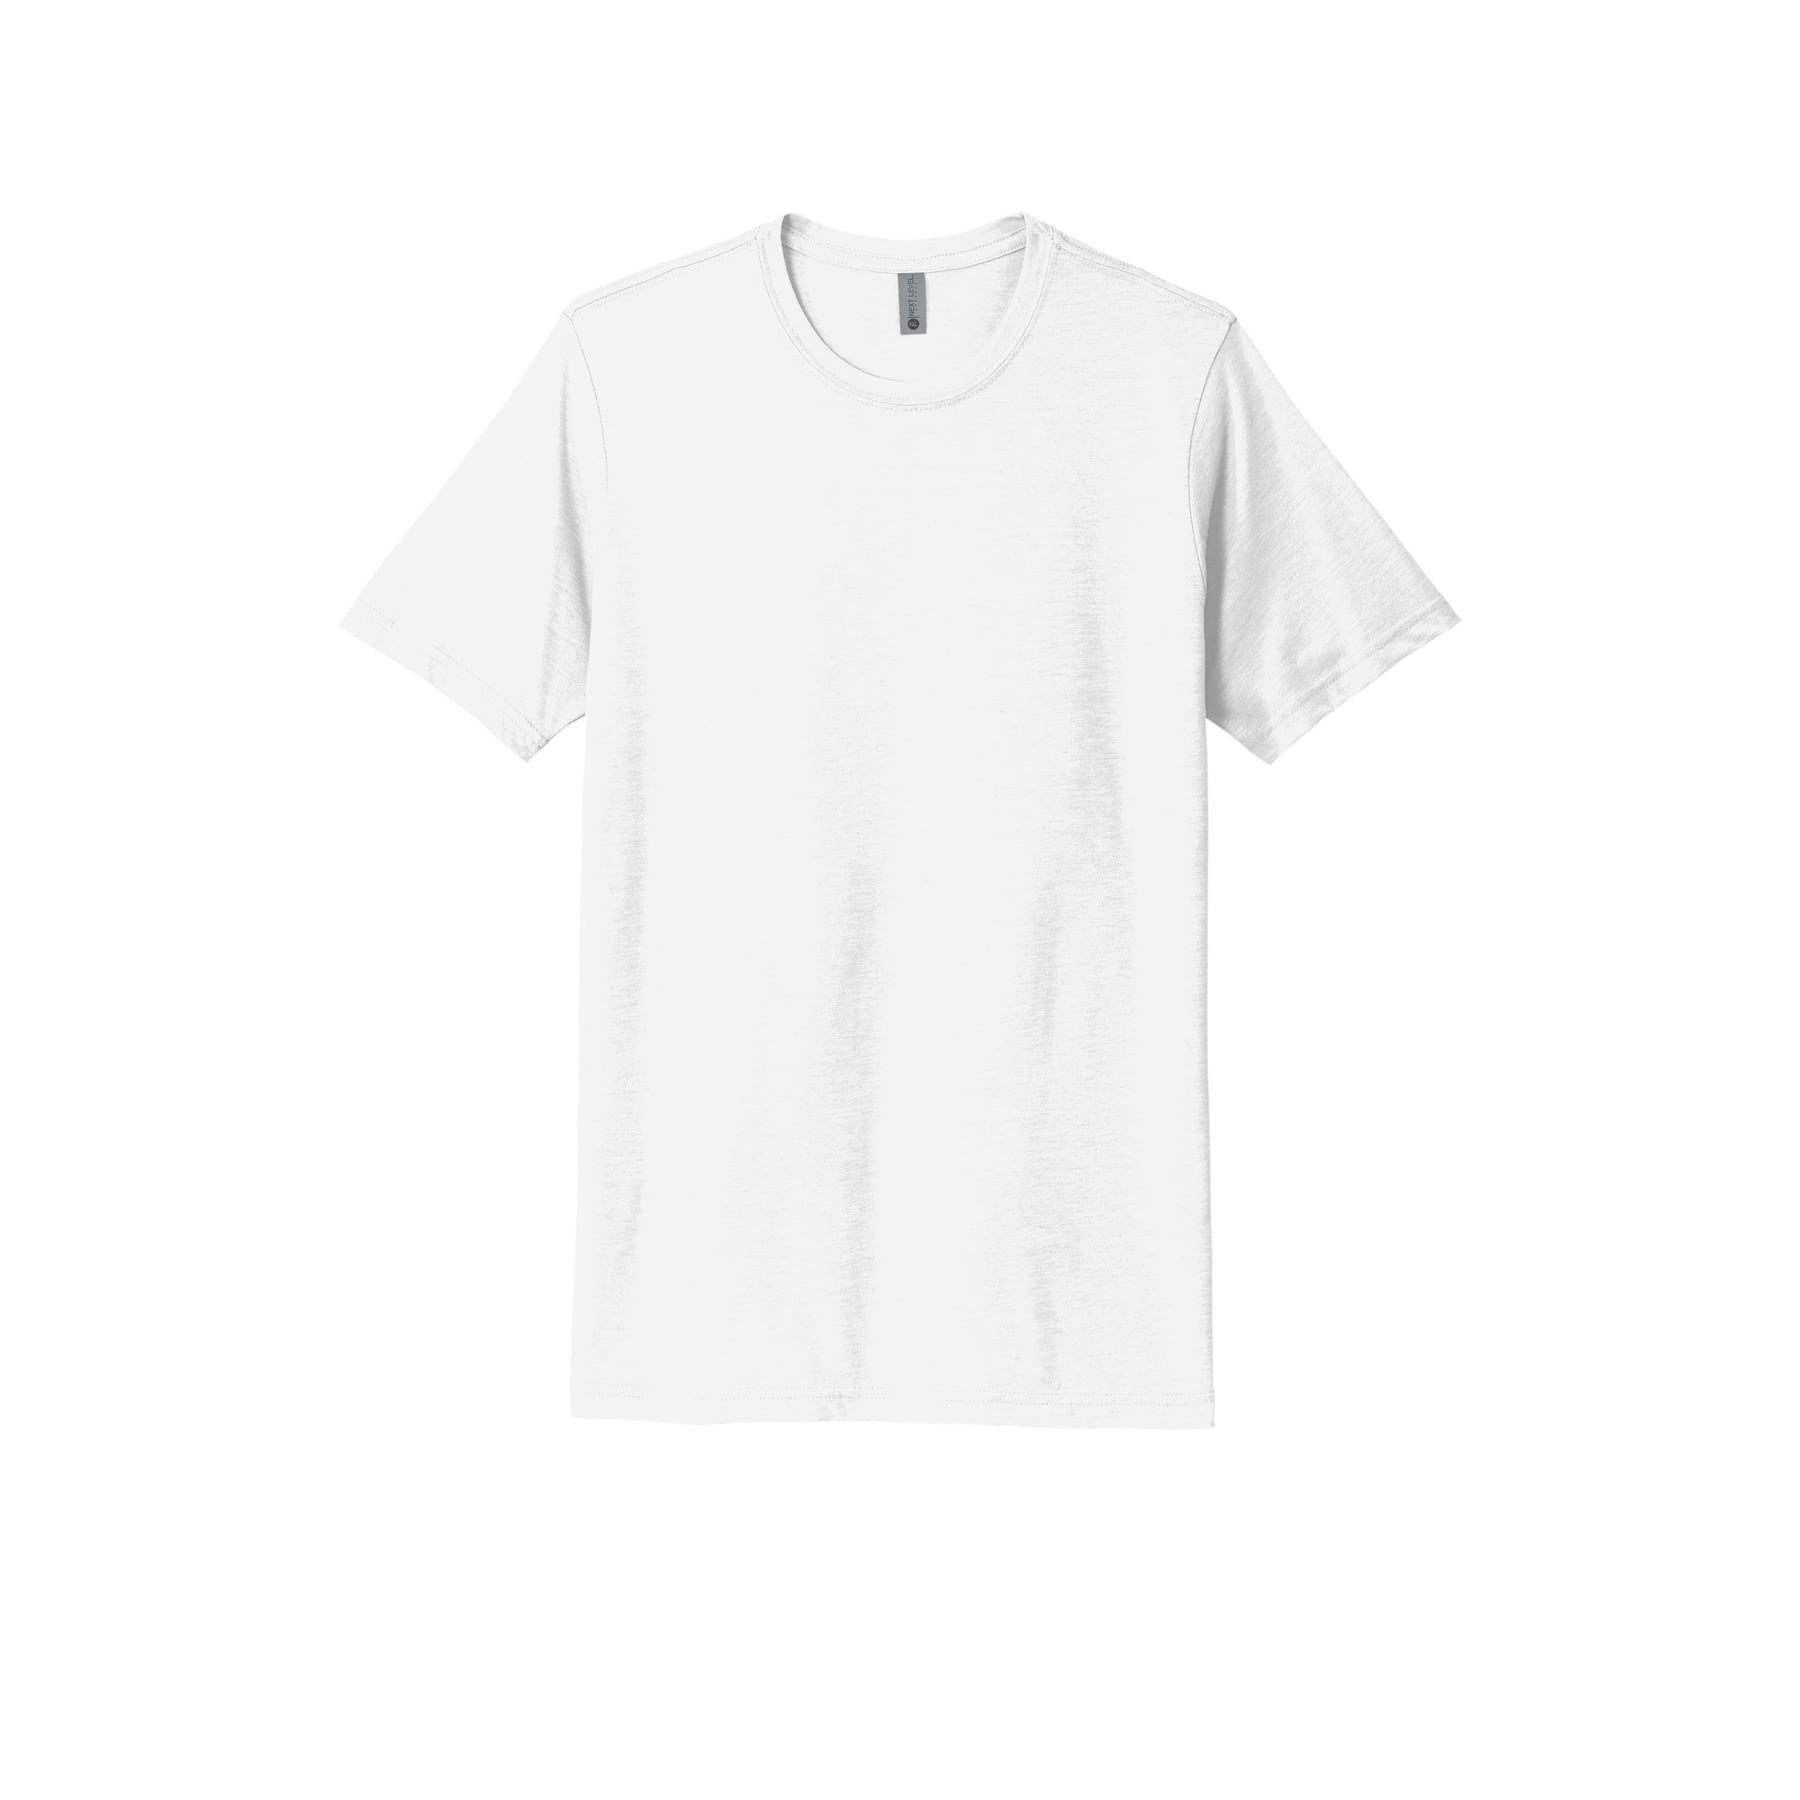 Next Level Neutrals Unisex Poly/Cotton T-Shirt